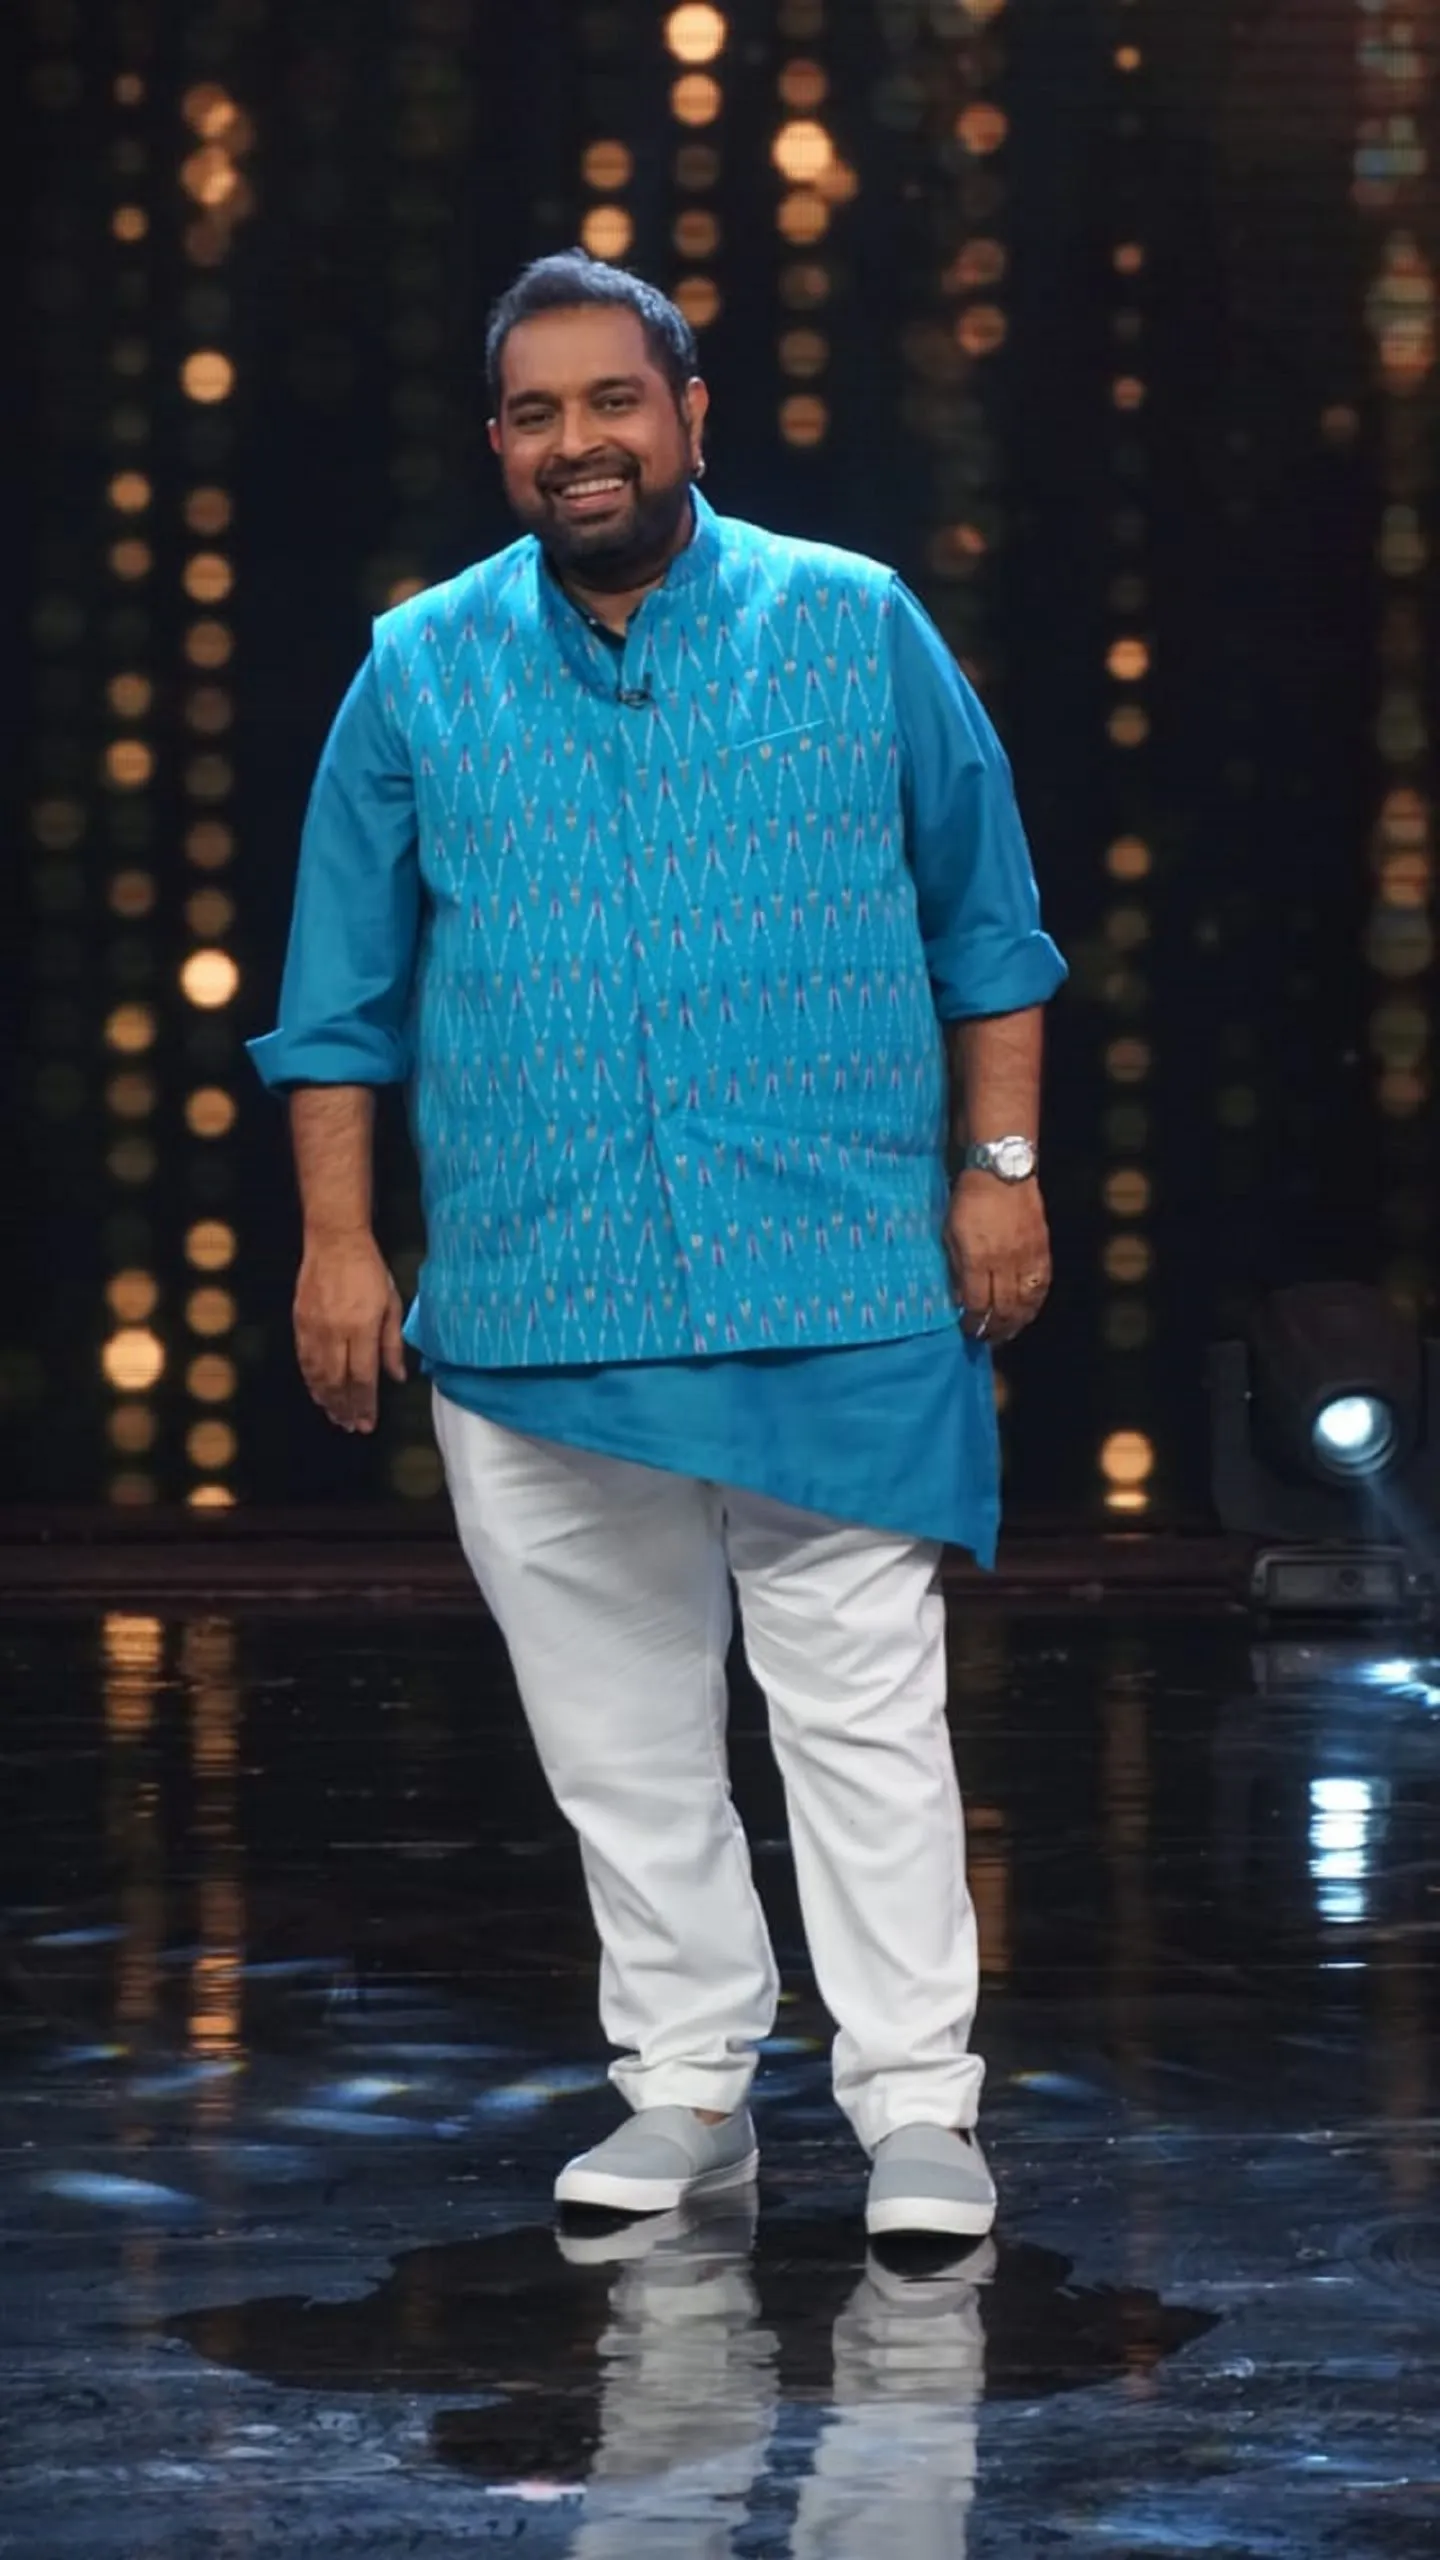 शो का कॉन्सेप्ट सुनते ही आमिर खान ने ख़ुशी-ख़ुशी दिया स्टार प्लस के अपकमिंग शो 